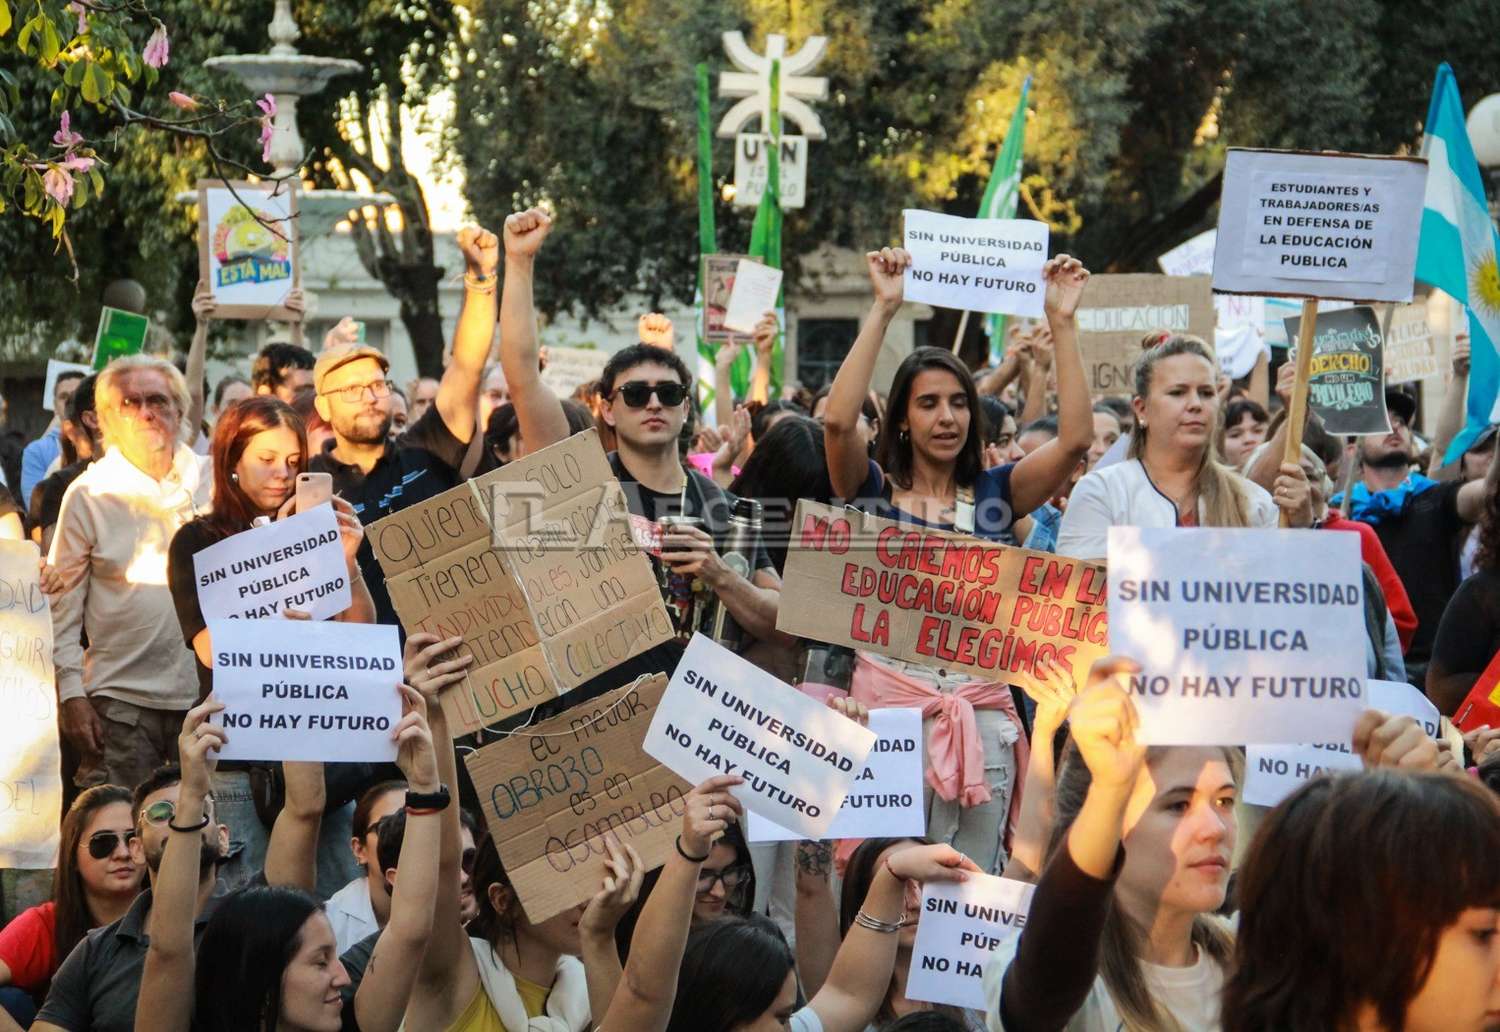 "Yo estuve ahí": Las mejores fotos de la marcha por la Universidad pública en Gualeguaychú